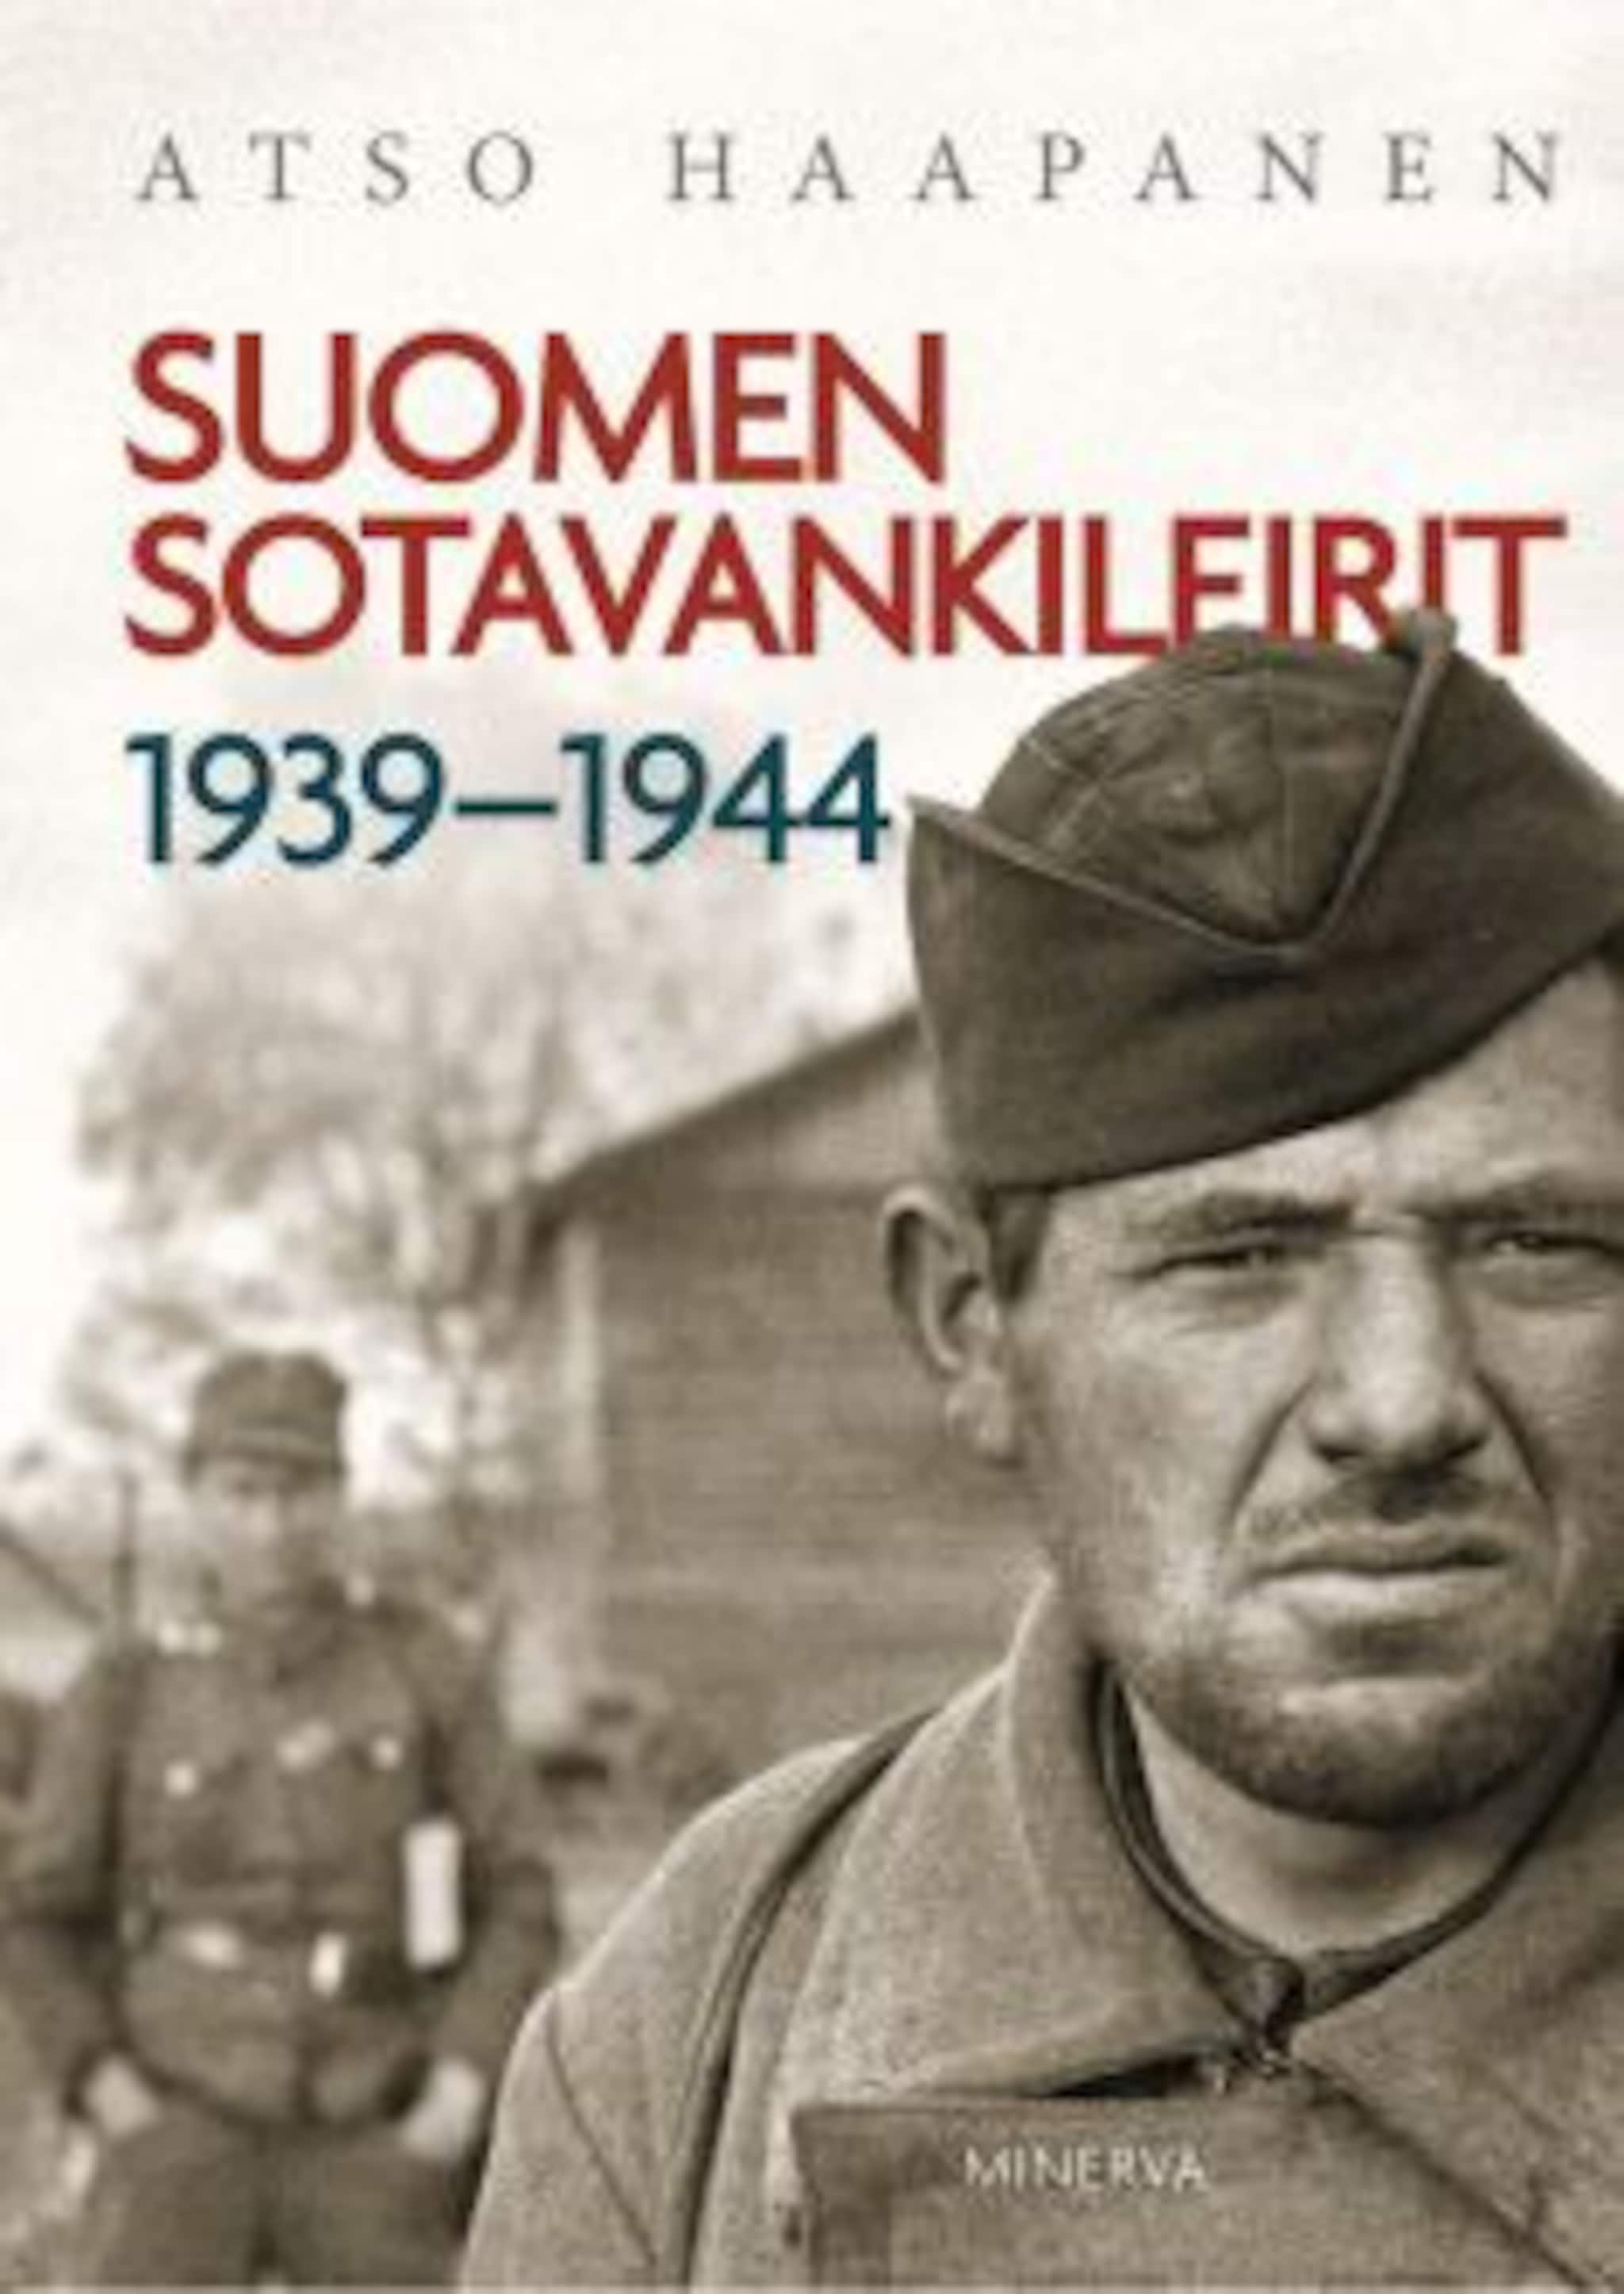 Suomen sotavankileirit 1939-1944 ilmaiseksi